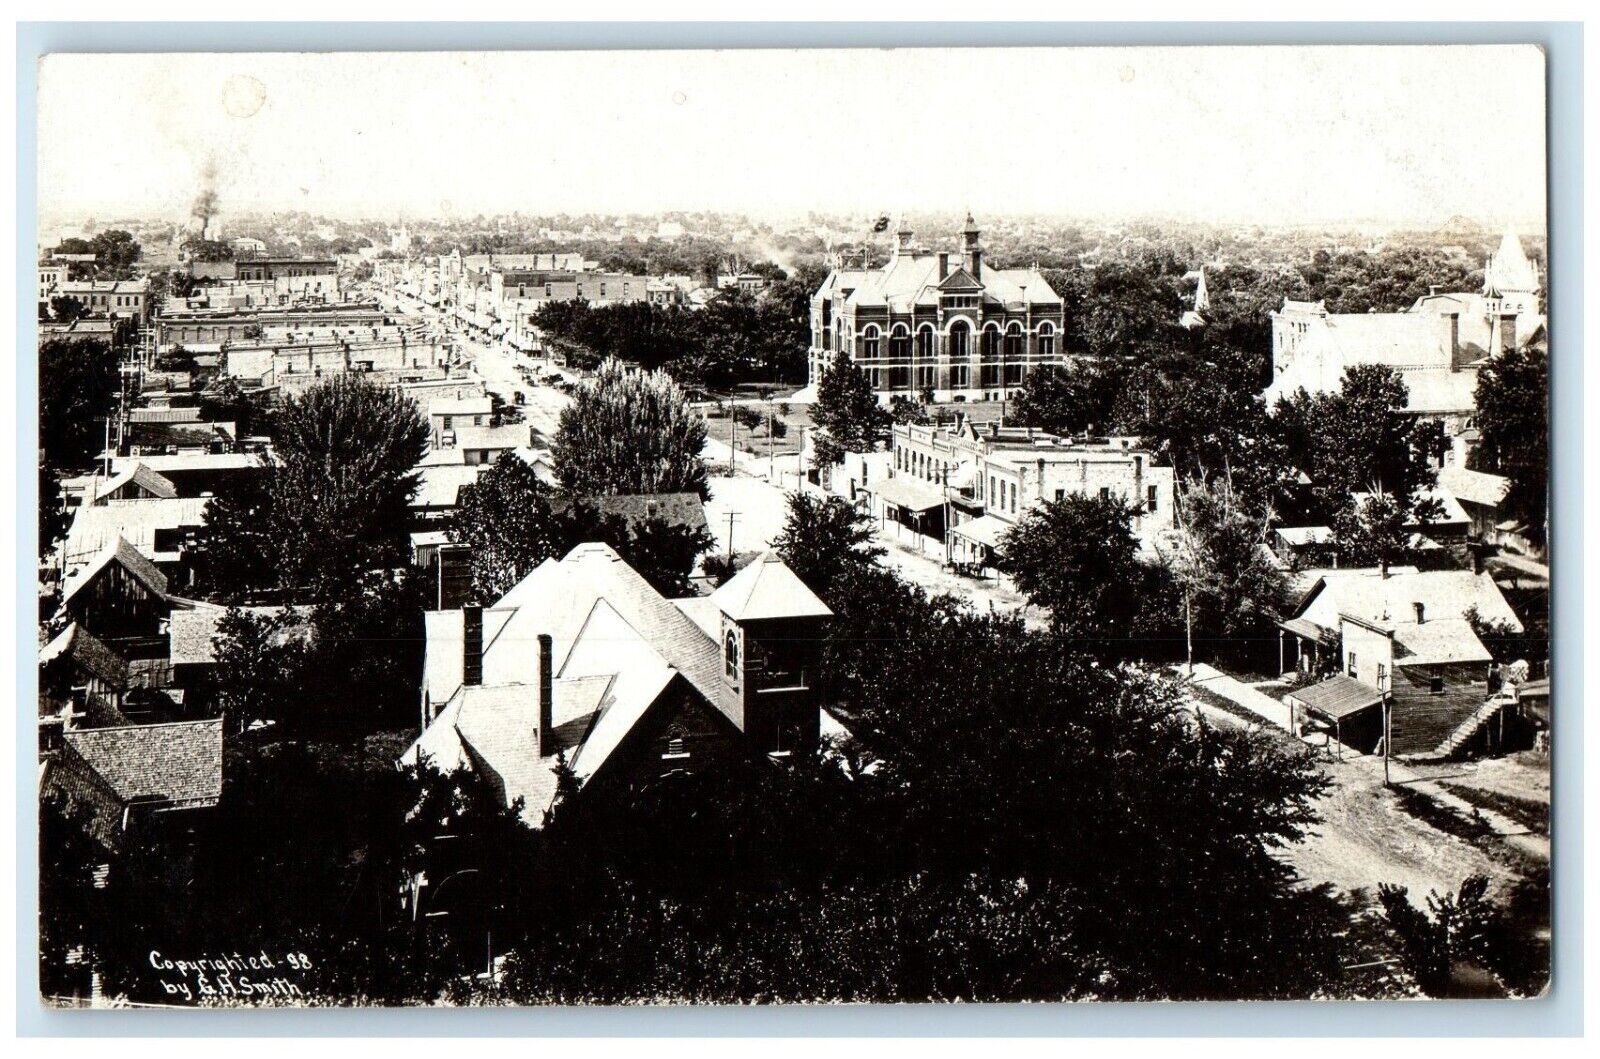 Ottawa Kansas KS RPPC Photo Postcard Aerial View Exterior Building c1940 Vintage